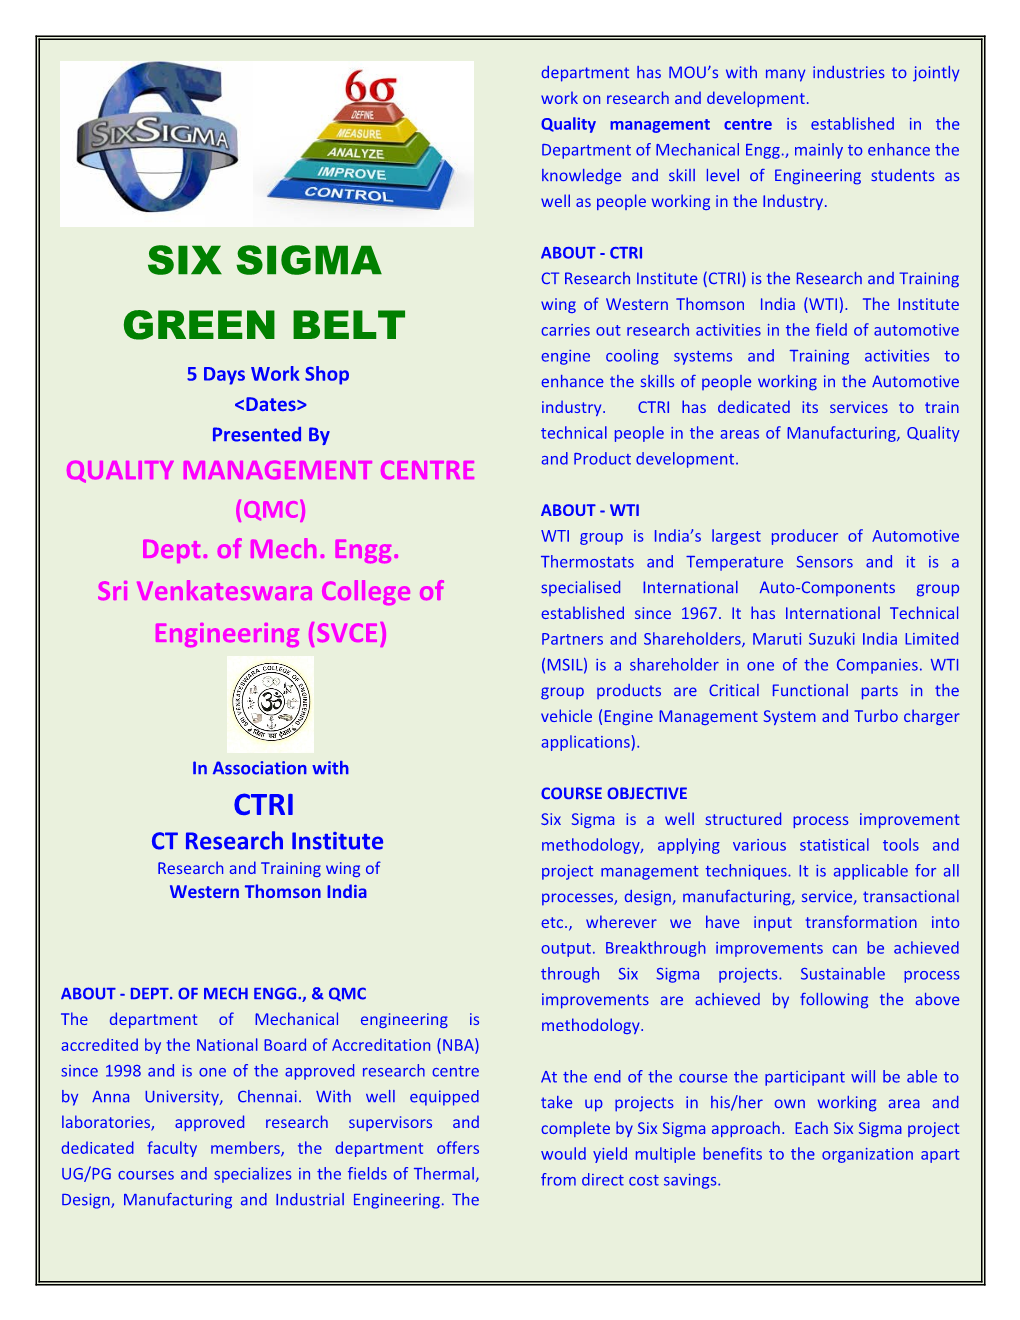 Quality Management Centre (Qmc)